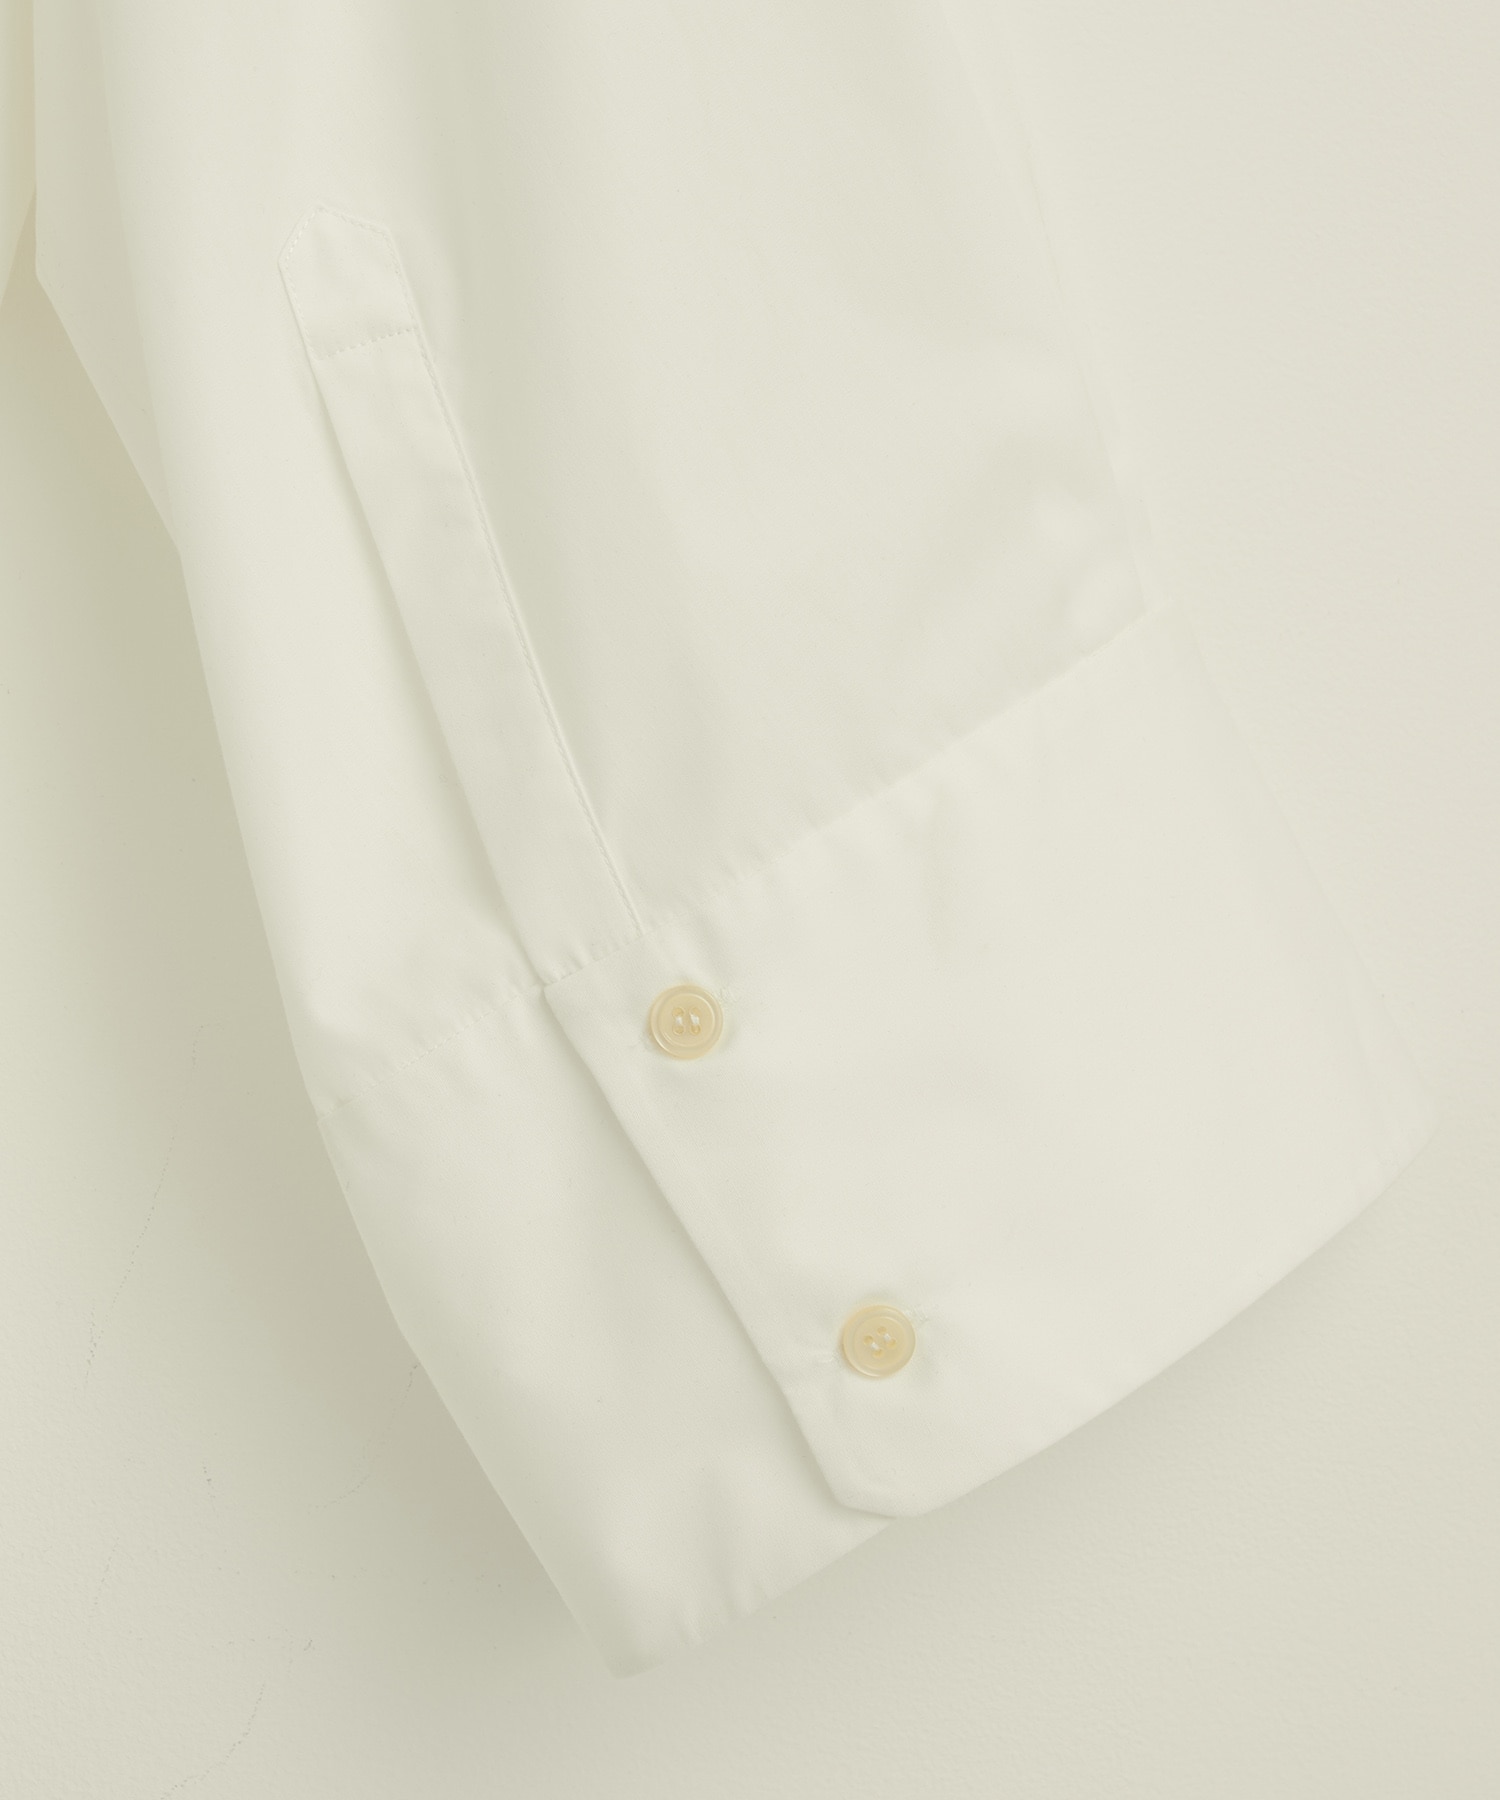 ビッグスリーブジップシャツ(FREE WHITE): : ウィメンズ｜PUBLIC TOKYO